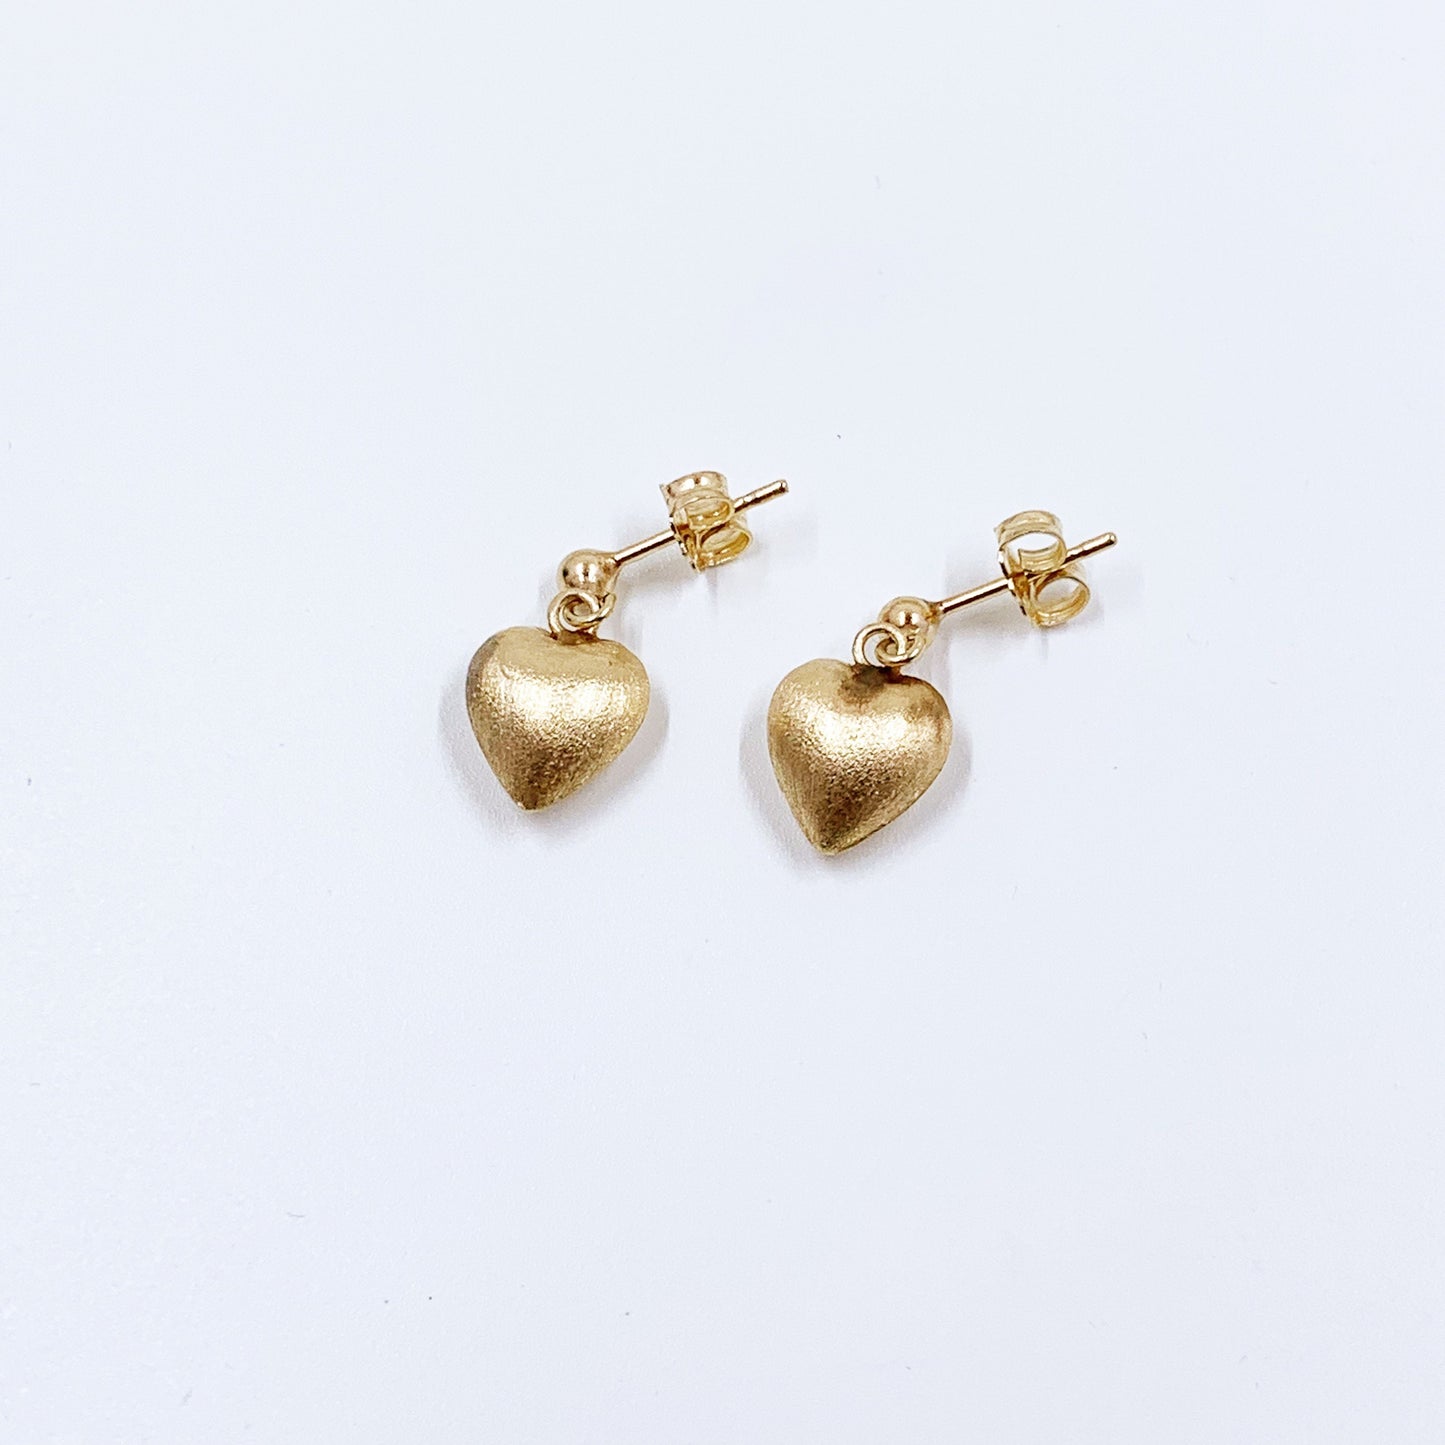 Vintage Gold Heart Drop Earrings | Classic Heart Earrings | Dainty 14K Heart Earrings